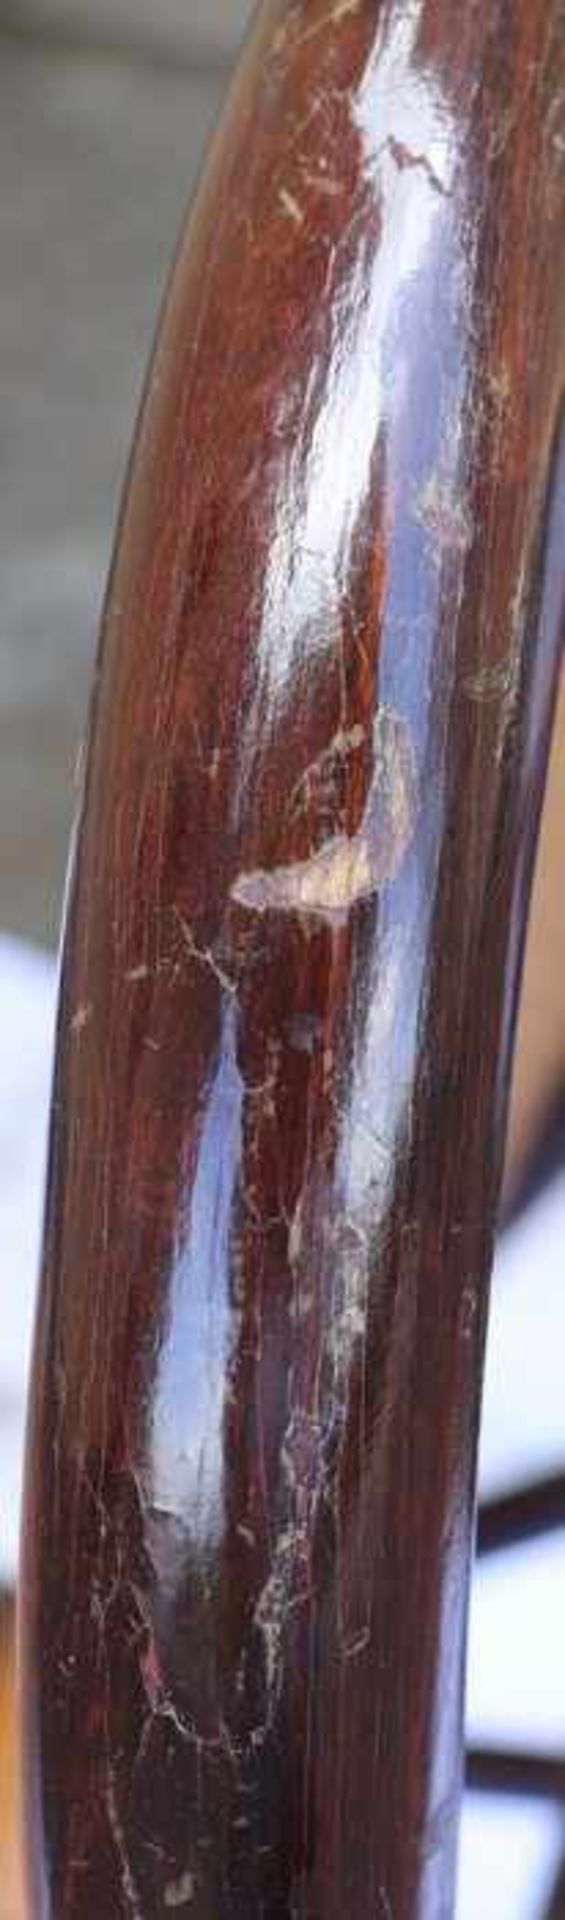 Trachtenkorb19. Jh., Franken, Weide mit Lederapplikationen, tlw. eingefärbt, halbrunde Form mit - Bild 10 aus 18